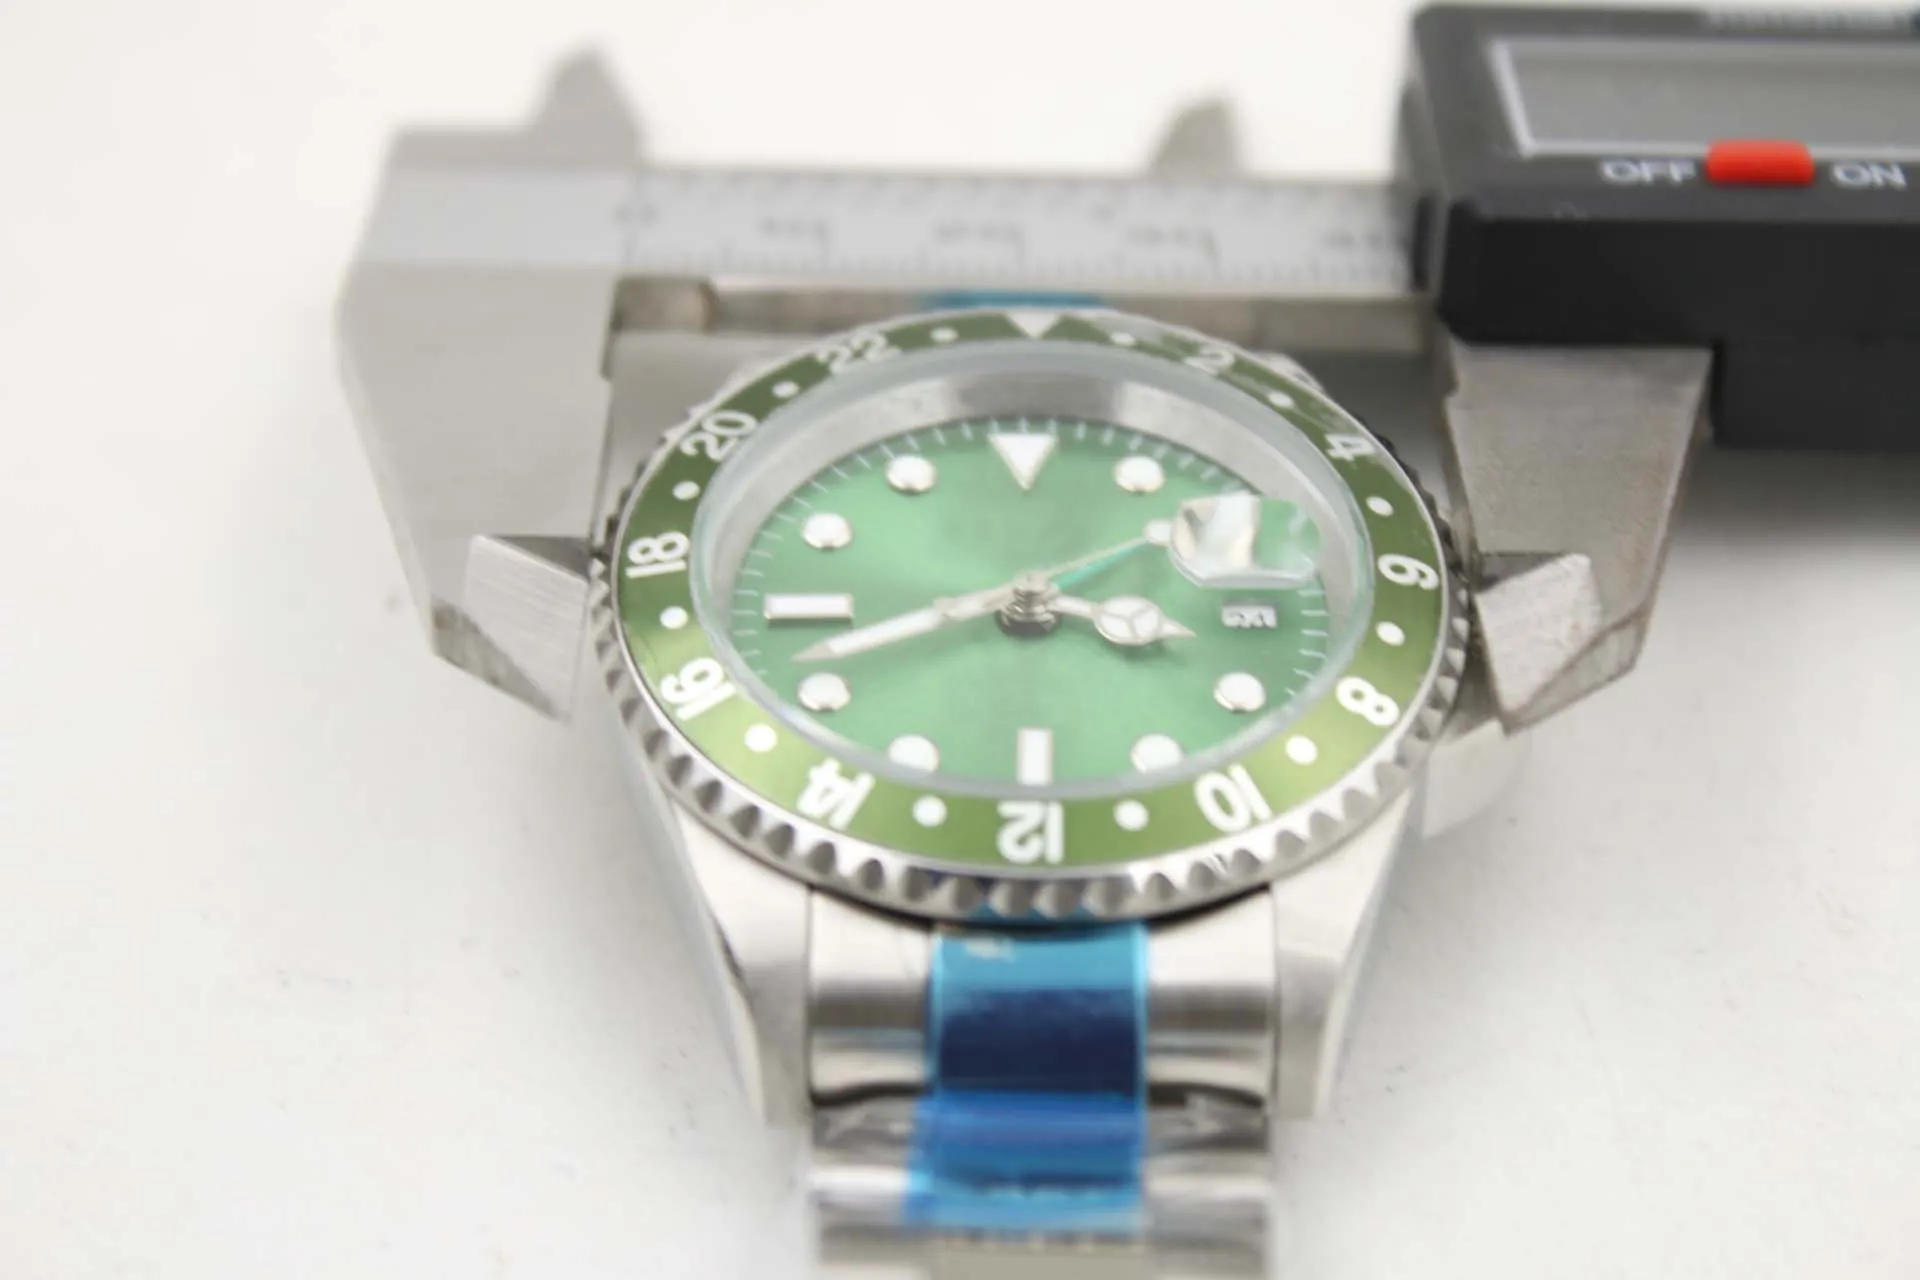 Relógio mecânico masculino 116710 negócios casual moderno prata branco caixa de aço inoxidável verde anel lateral dial 4 pinos 40mm calend1923